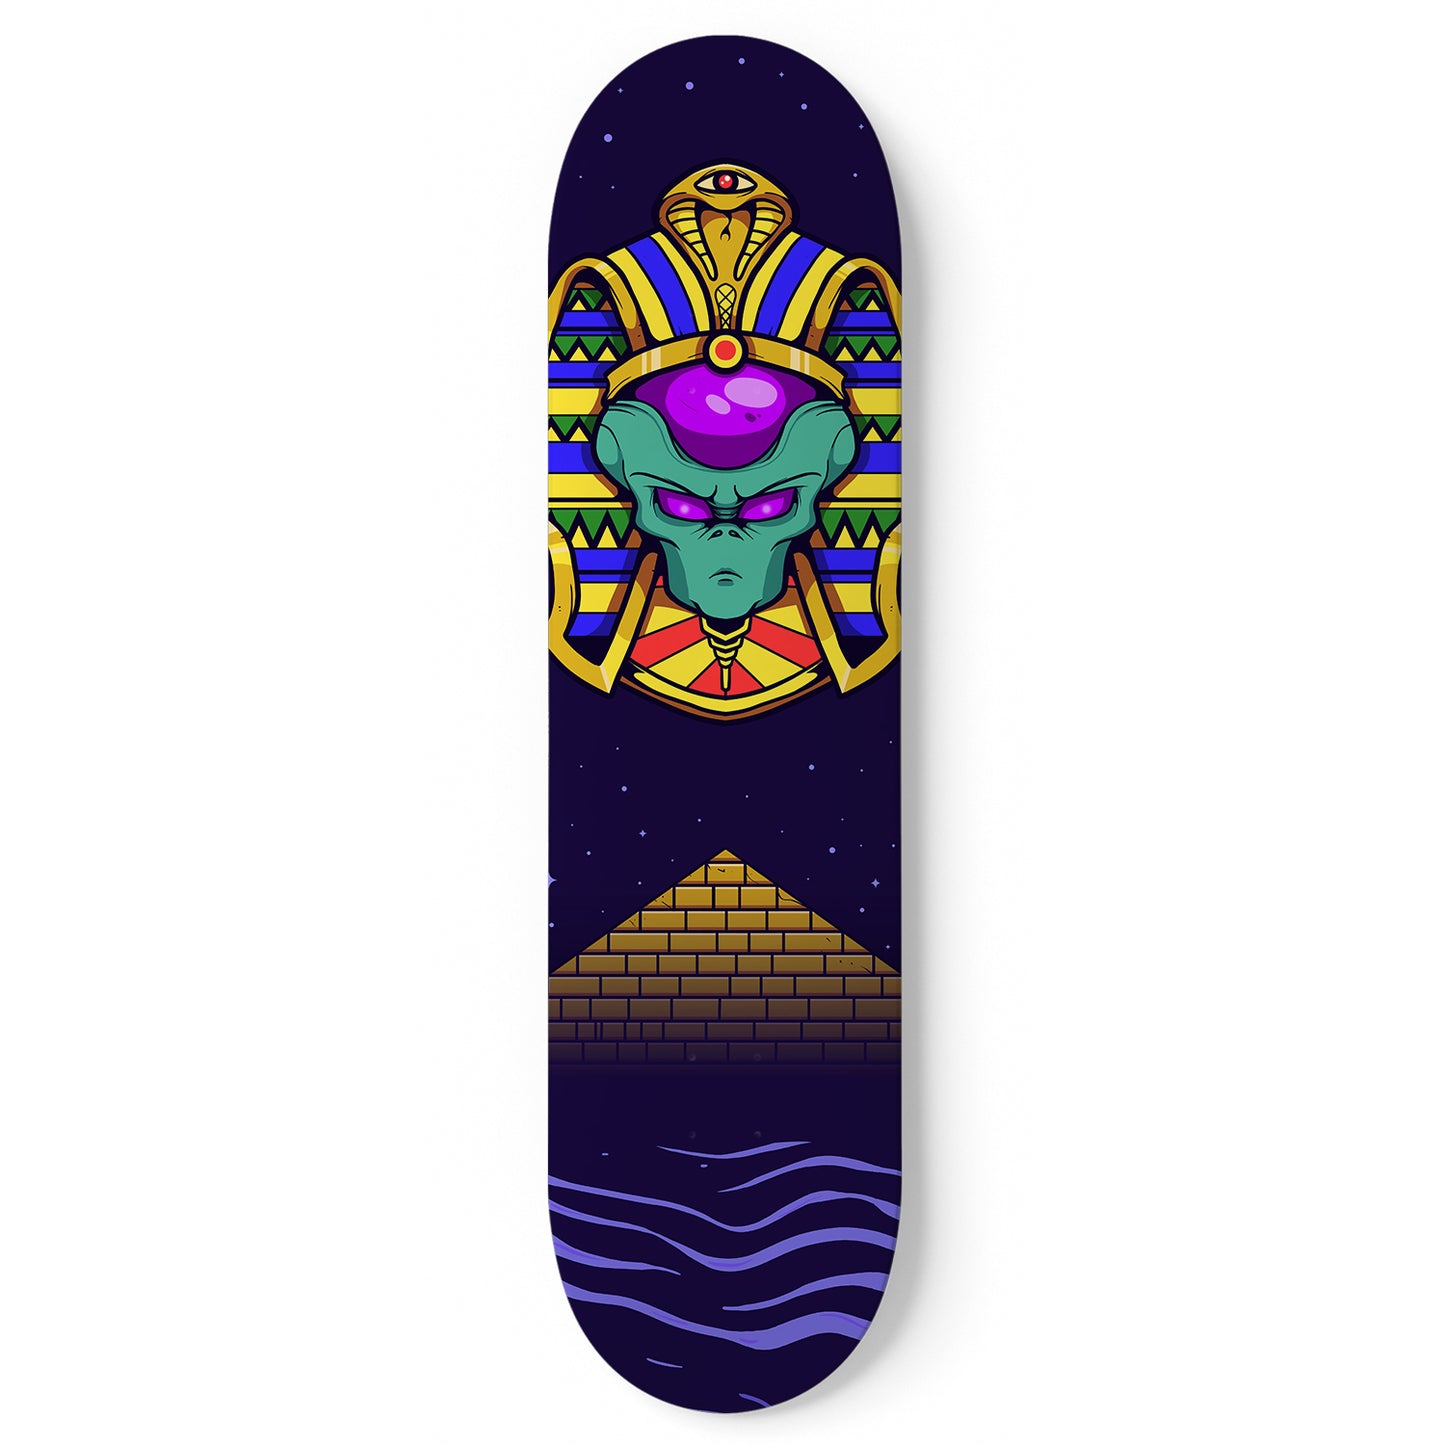 Pharaoh's Secret" Skateboard Wall Art